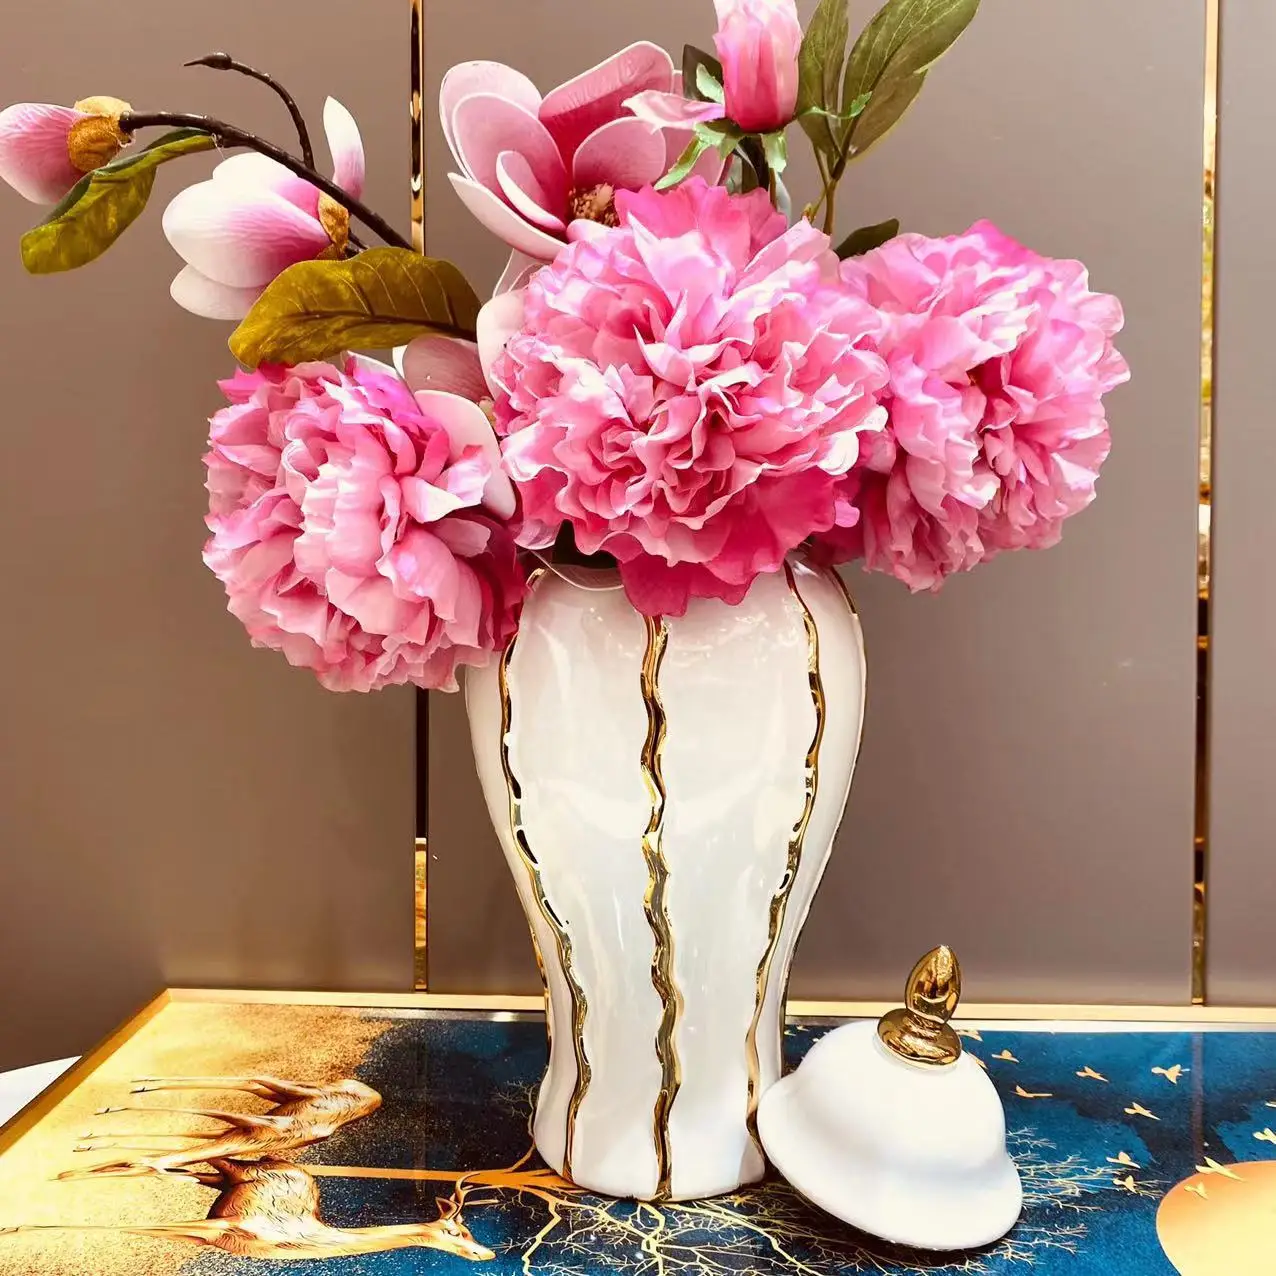 Ceramic Ginger Jar  Hot Sale Custom White and Gold Electroplating Large Tall Decorative Jar vase For Flower